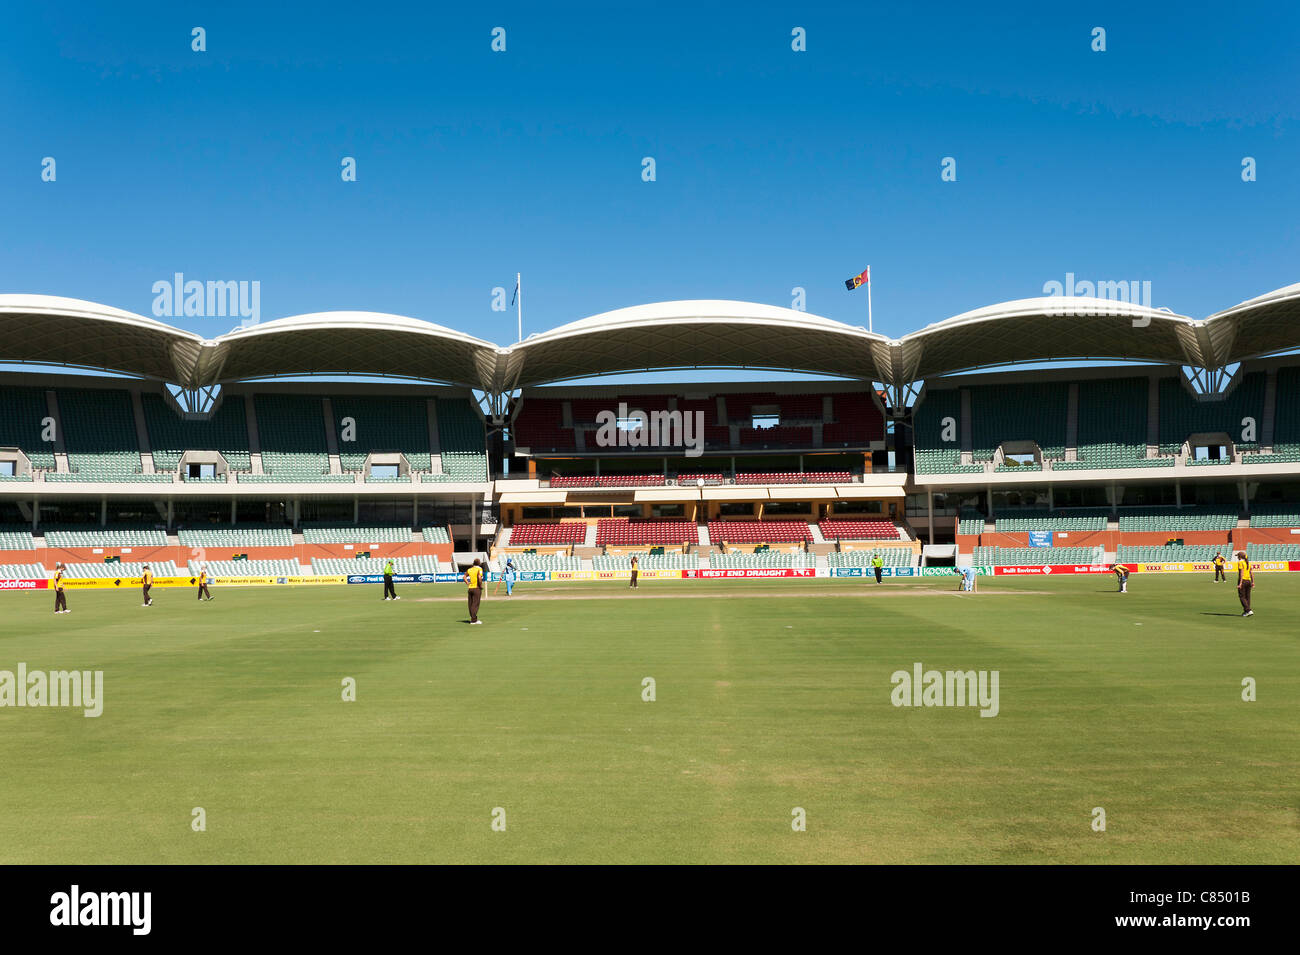 Un stand à l'Adelaide Oval Cricket Ground lors d'un jeu de dames Adelaide (Australie) SA Banque D'Images